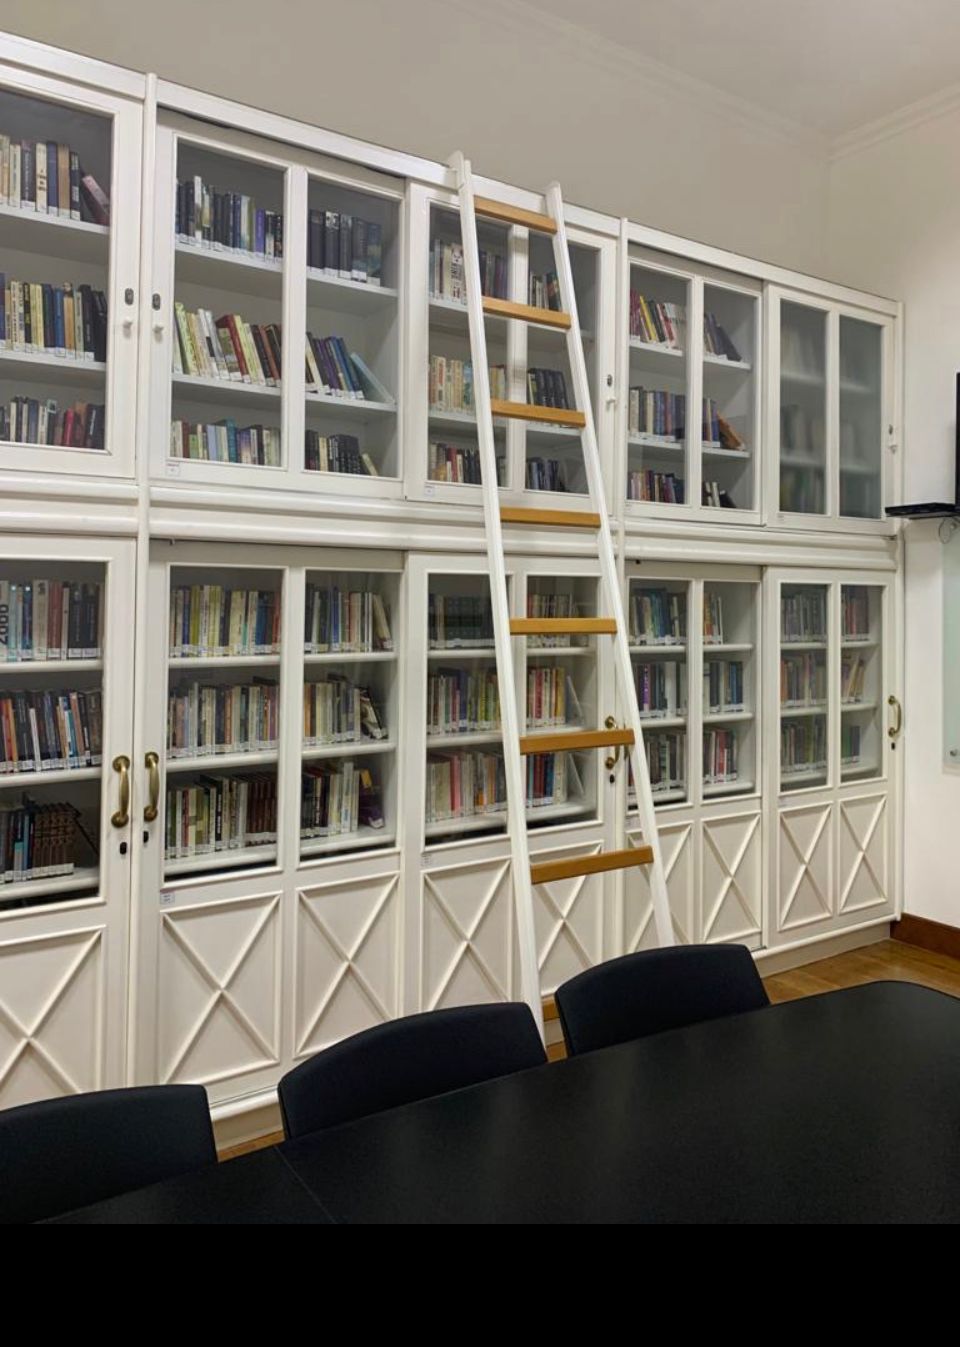 Xadrez On-line - Biblioteca de São Paulo